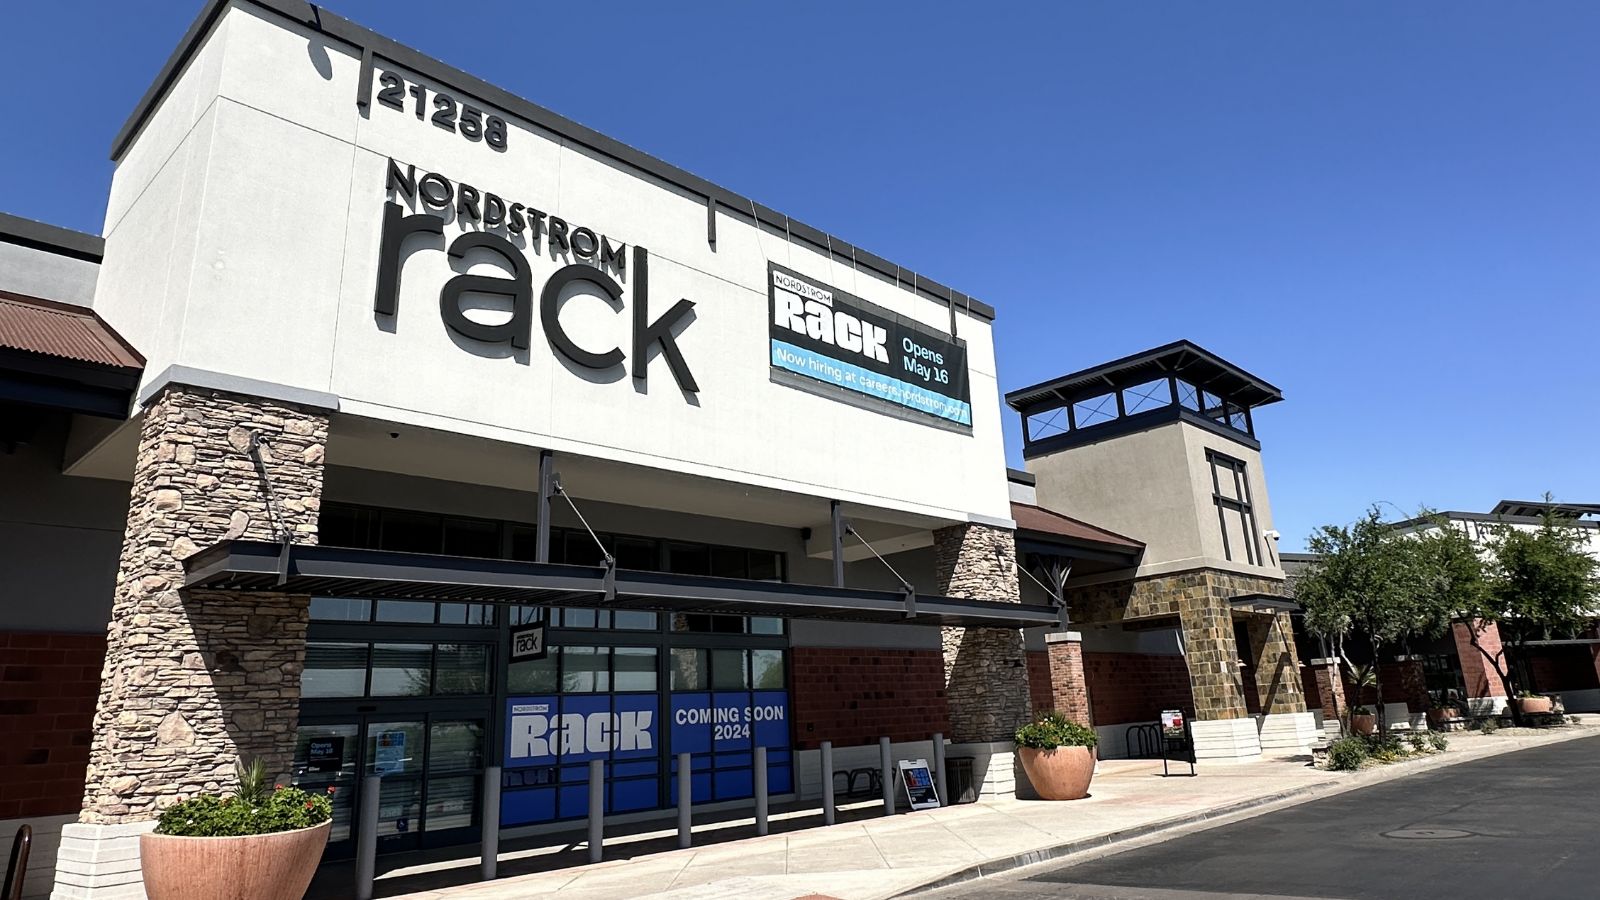 Nordstrom Rack location to open in Queen Creek next week...